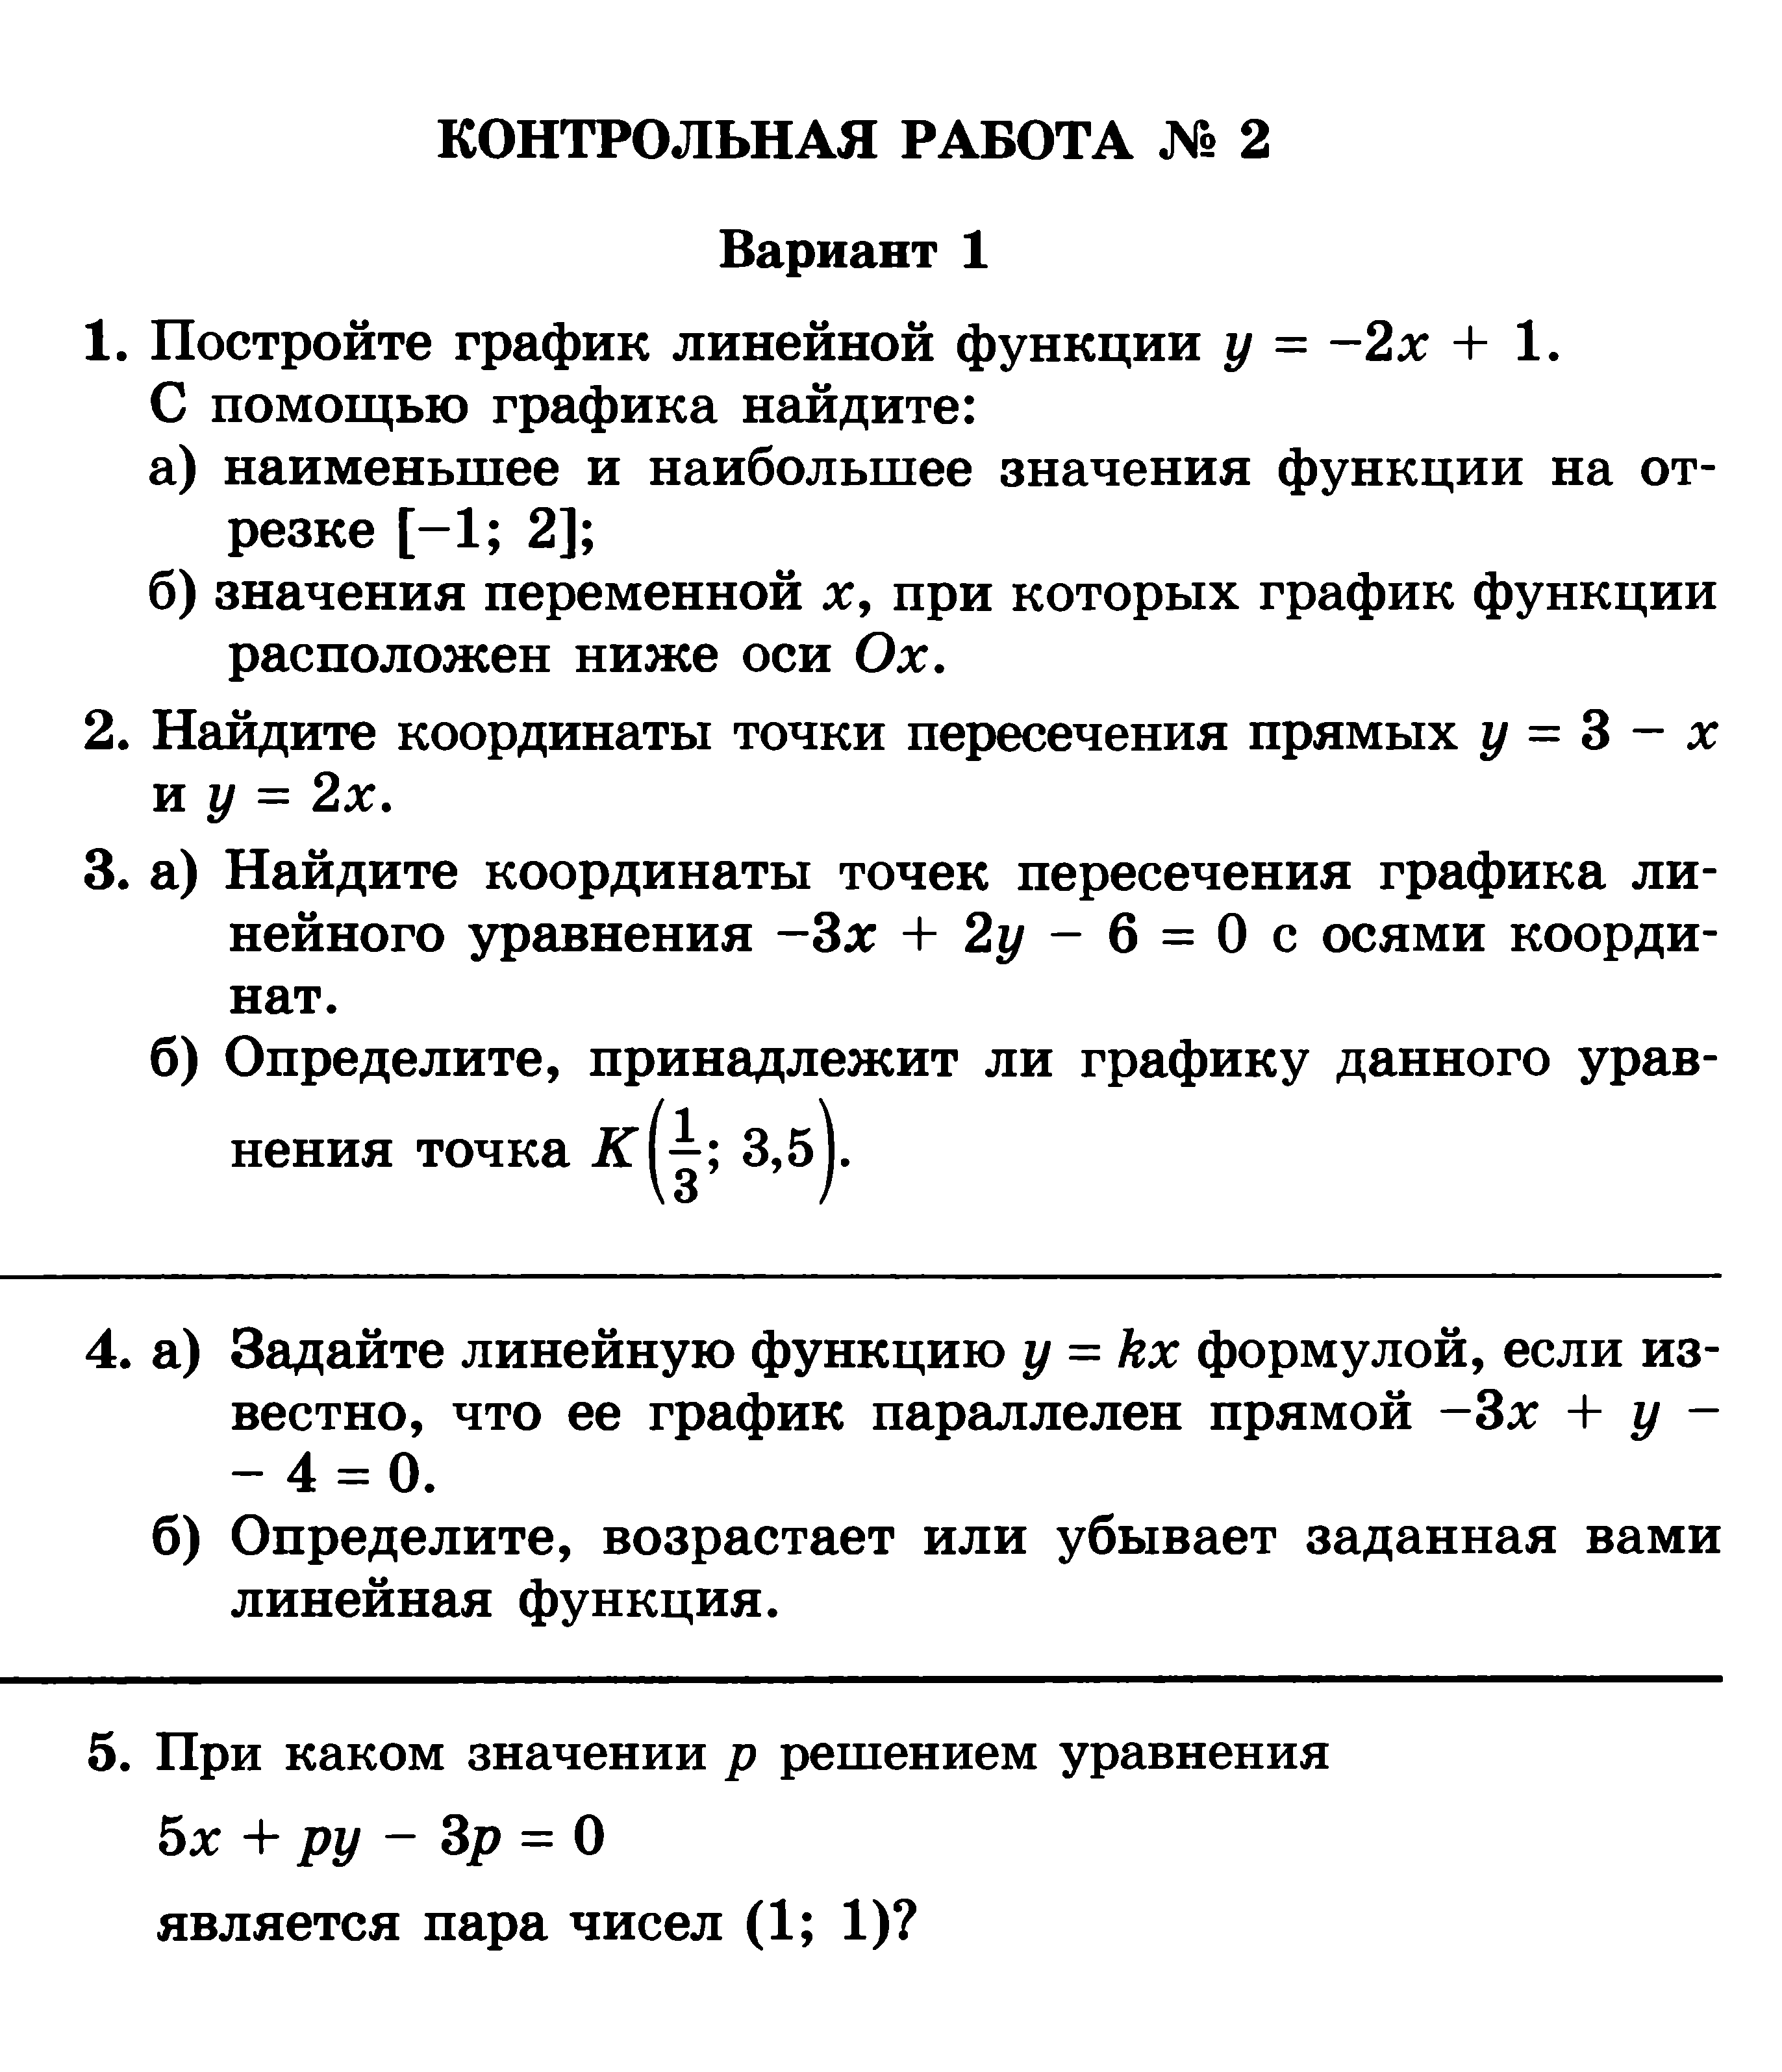 Рабочая программа по математике 7 класс Шерстнева Н.М.